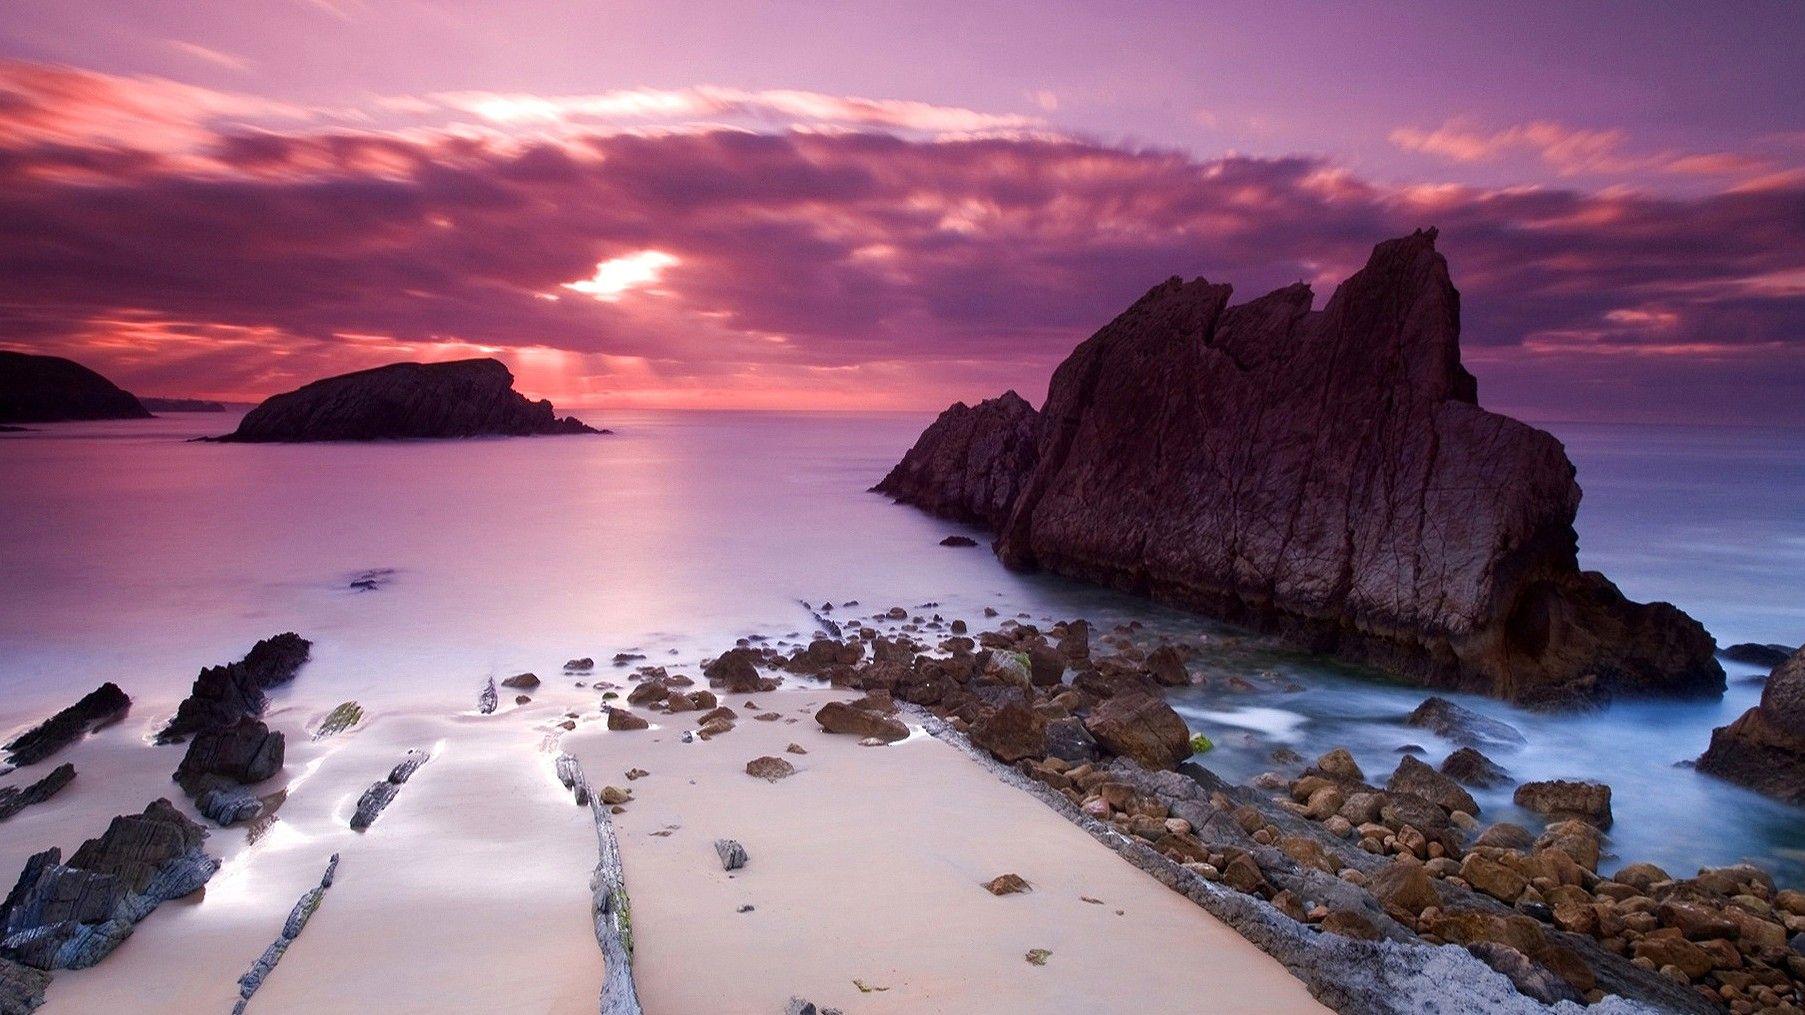 Pink Beach Sunset HD Wallpapers - Top Free Pink Beach Sunset HD ...